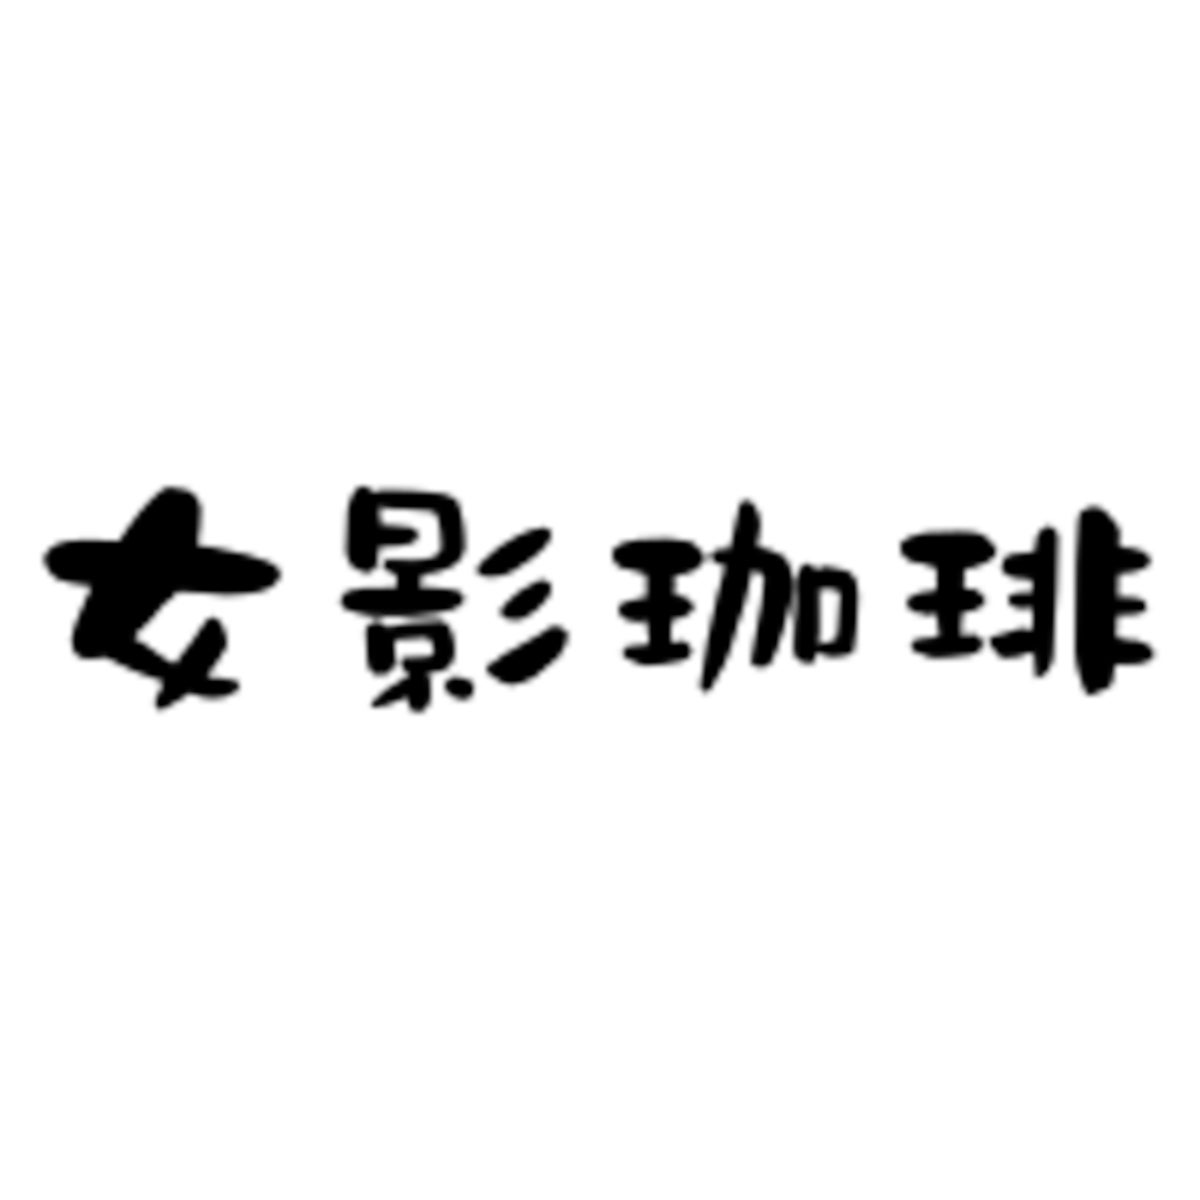 リレー方式ラーメン企画「POPUPラーメン」第5弾は東海ミシュランガイド2019に掲載された岐阜の「イロドリ」 6月1日から東京ミッドタウン八重洲内の「ヤエスパブリック」で提供開始